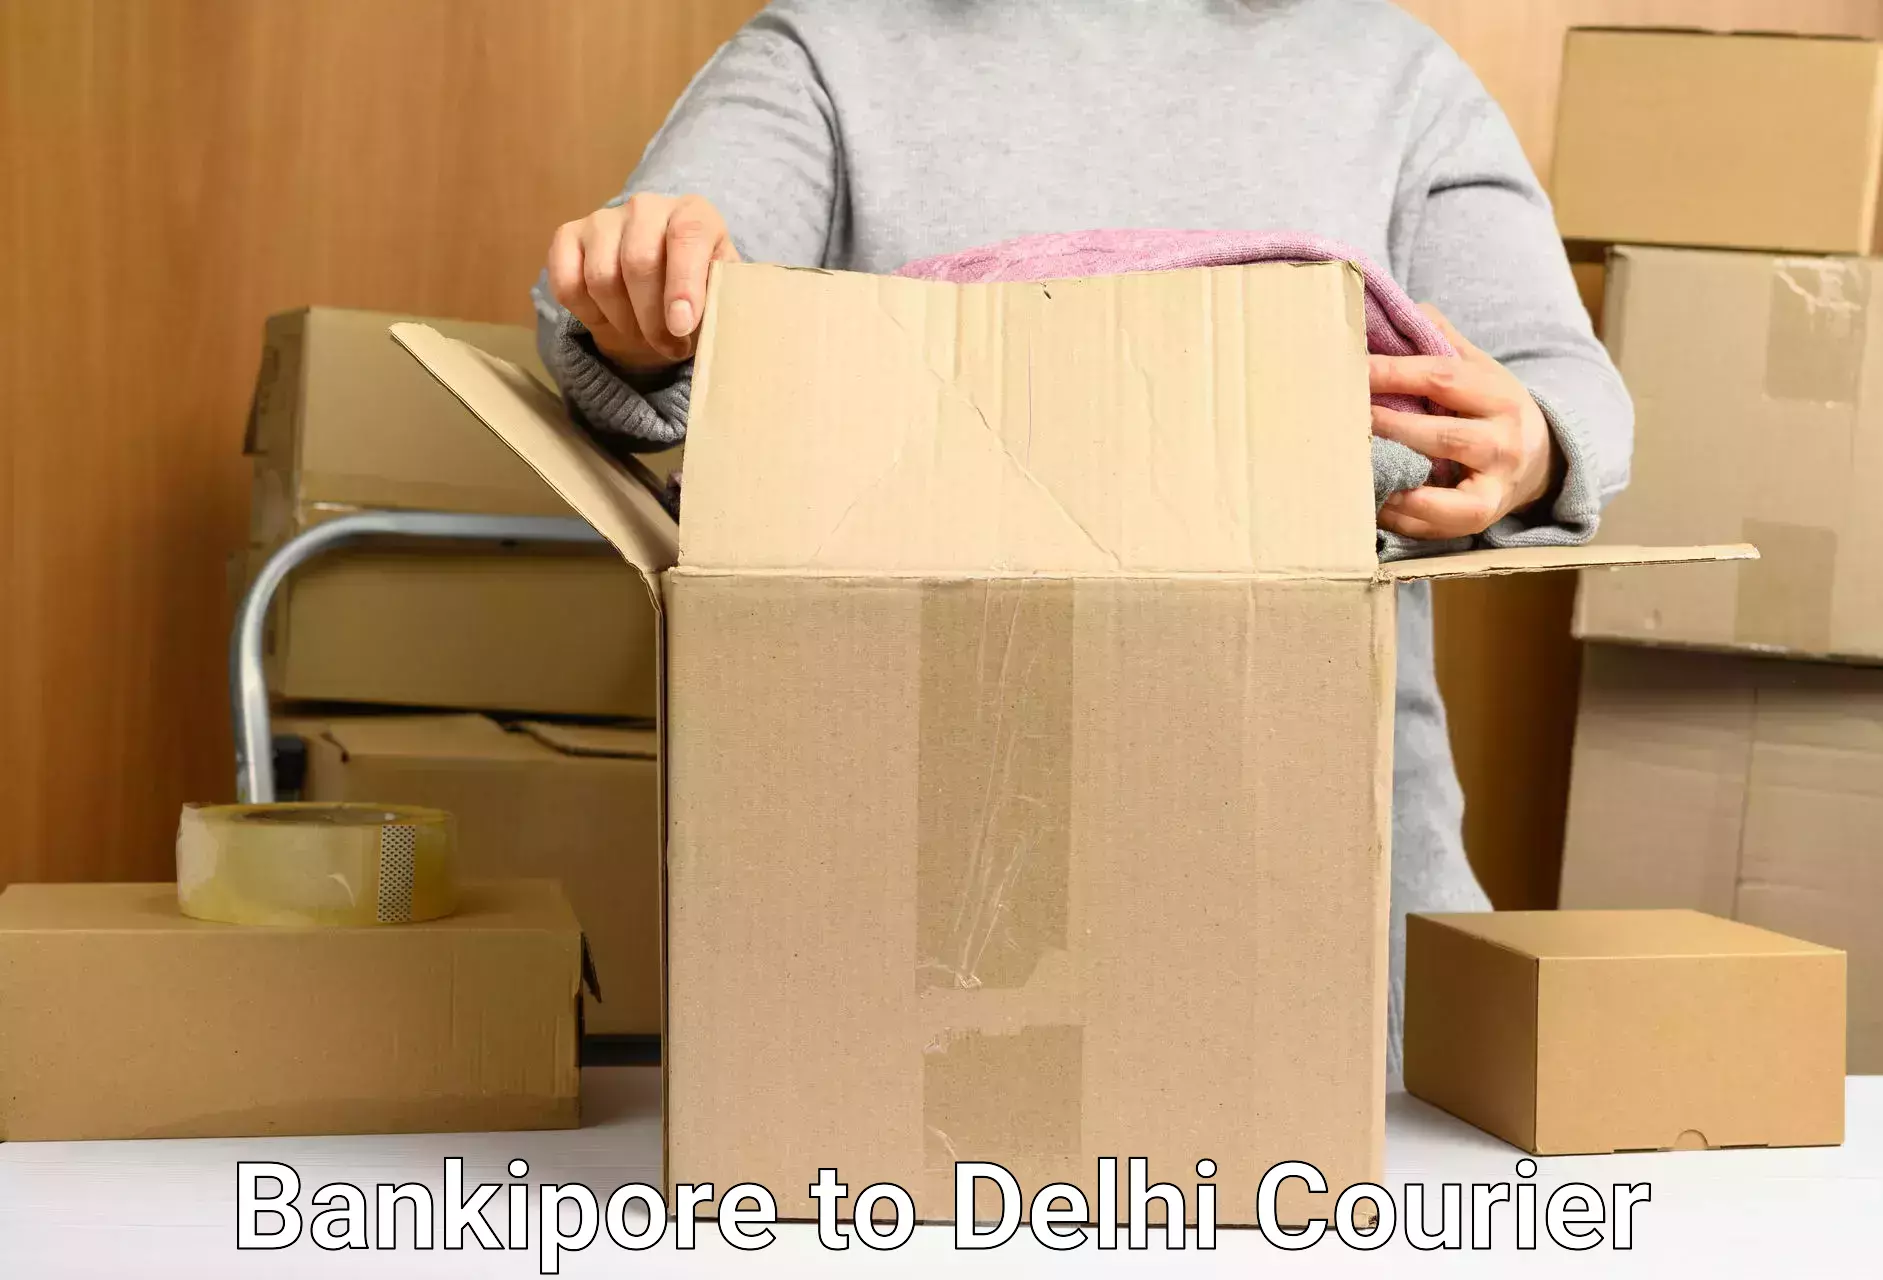 Air courier services Bankipore to Jamia Millia Islamia New Delhi